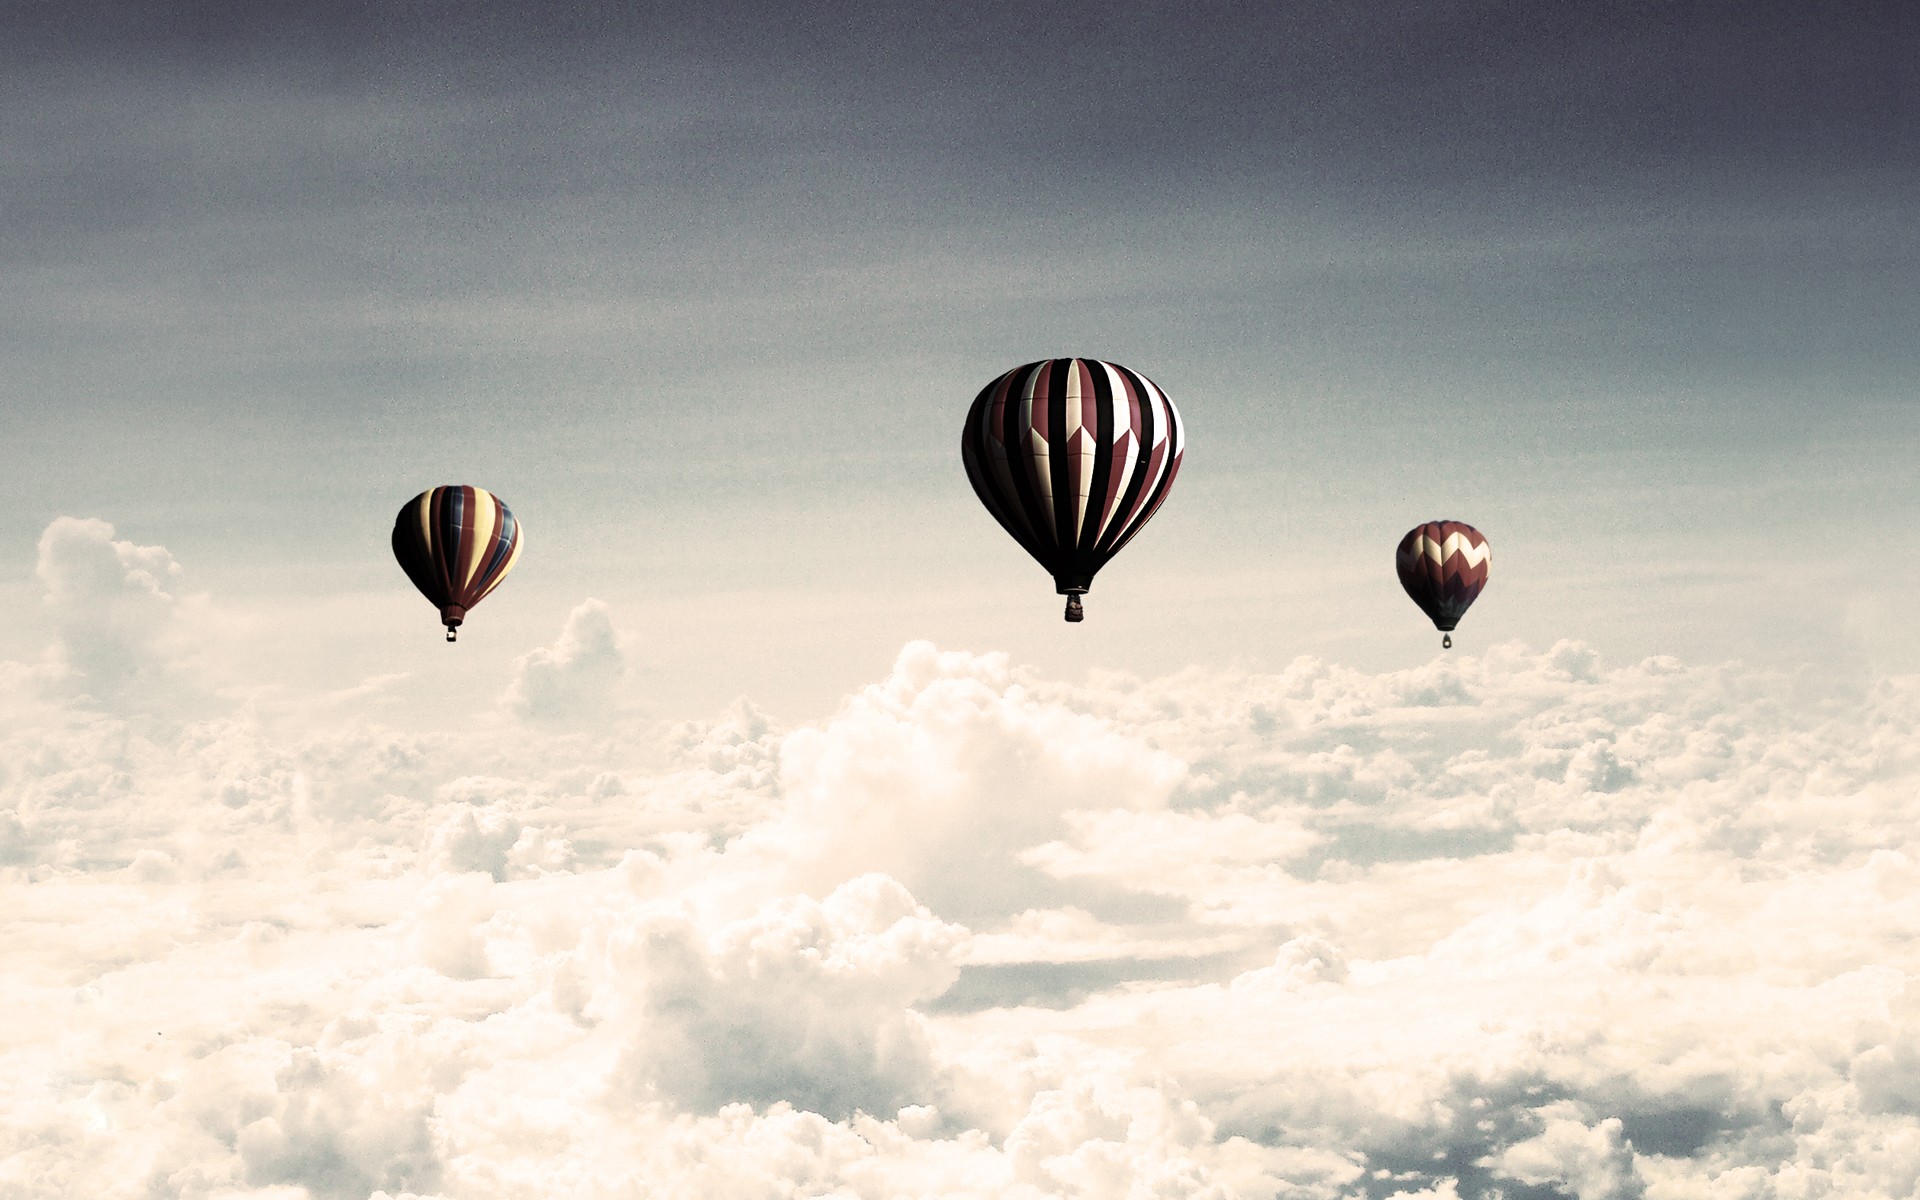 clouds, hot air balloons - desktop wallpaper